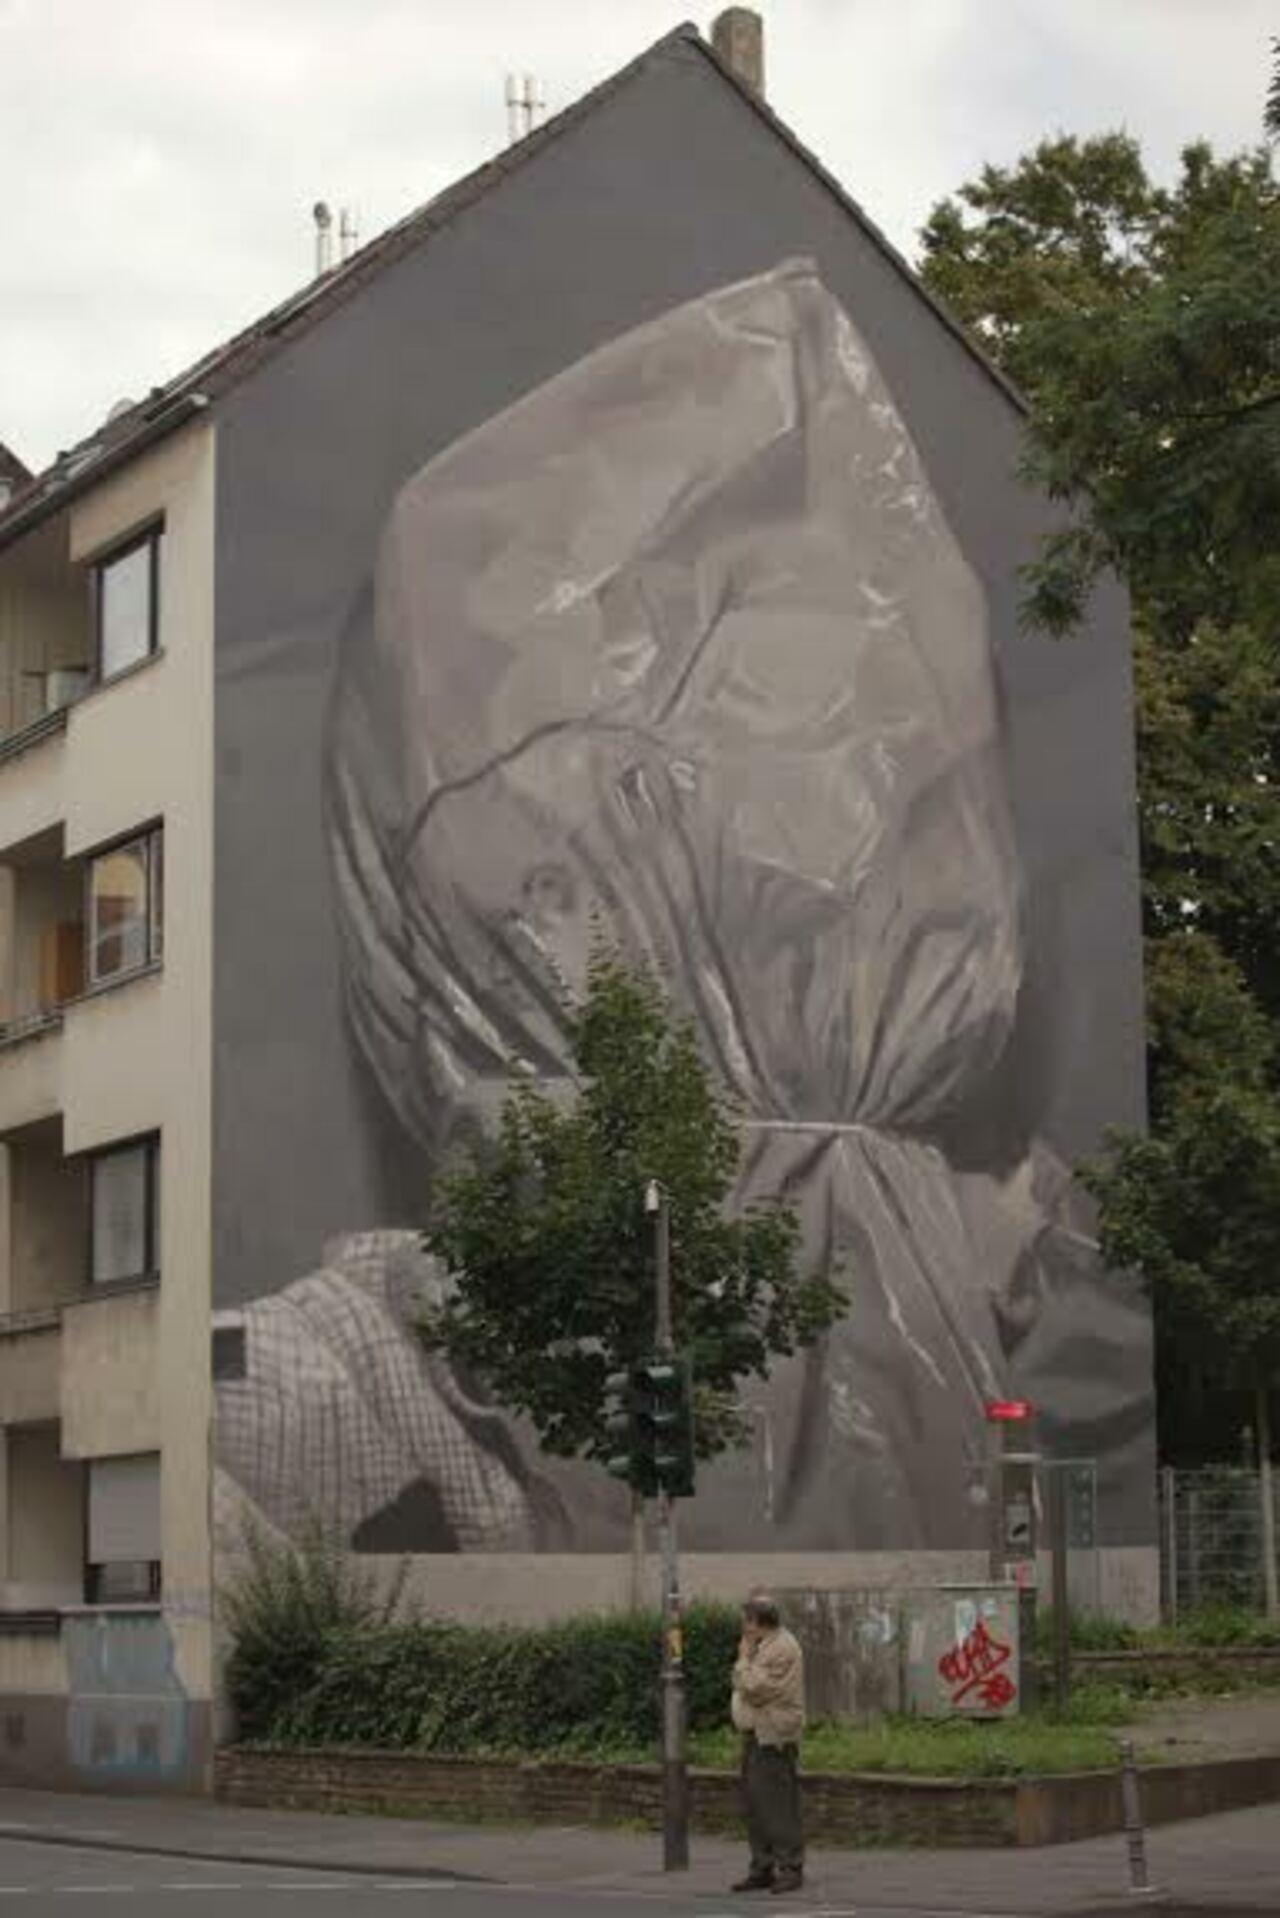 RT @allcitycanvas: . @AXELVOID 's powerful #mural for @CityLeaks2015 #streetart #publicart #graffiti #cologne #urbanart #art http://t.co/aTsppbABXM